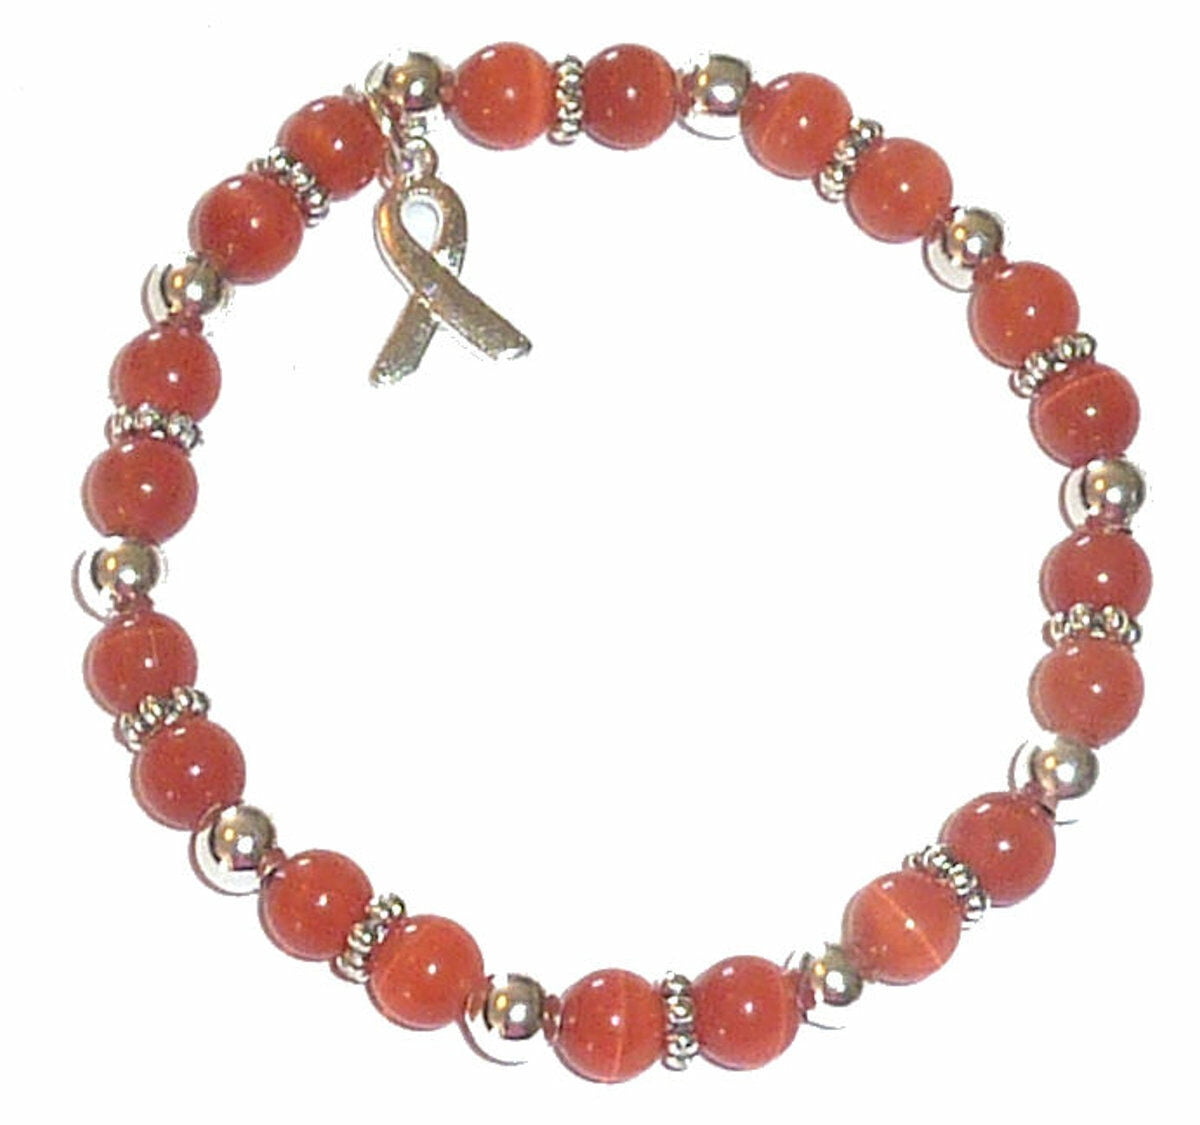 Amazon.com: Leukemia Awareness Silicone Bracelet: Clothing, Shoes & Jewelry